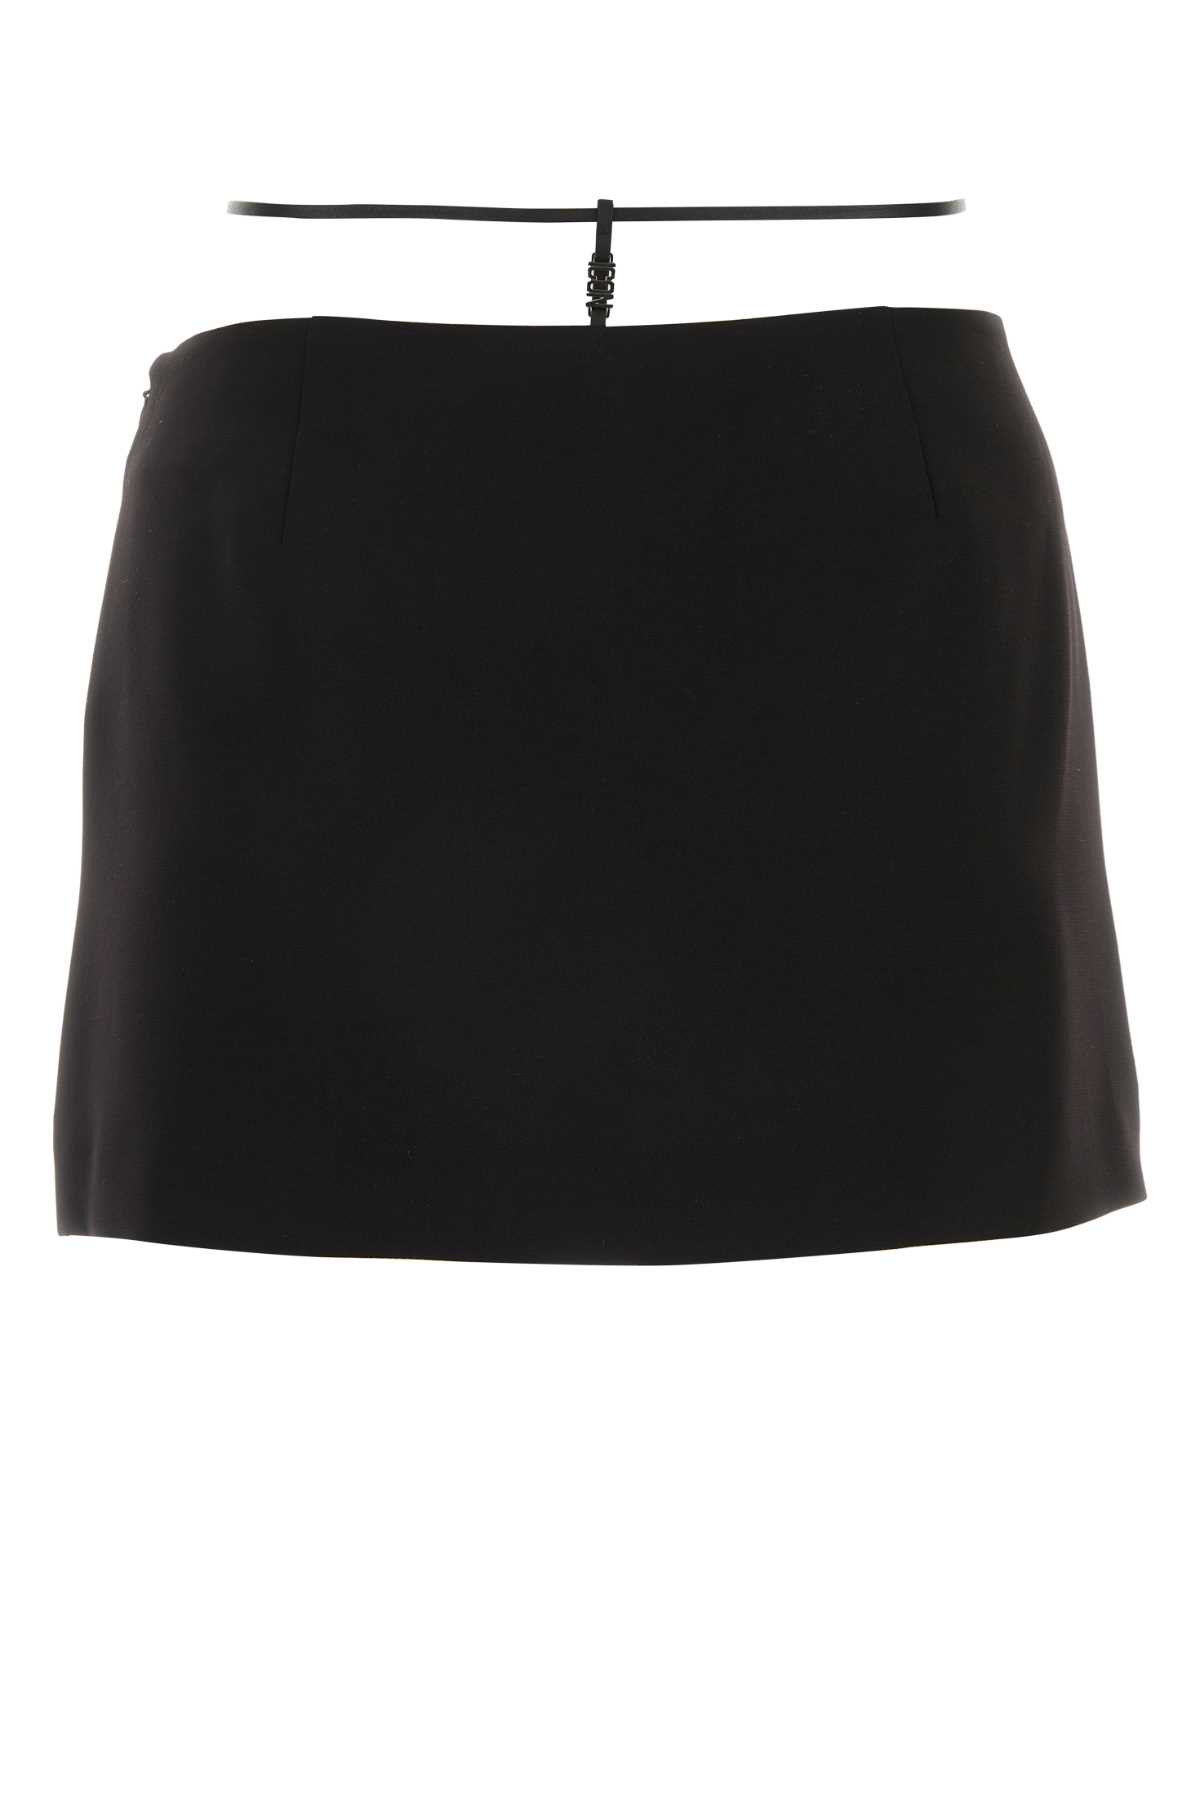 Dsquared2 Black Polyester Mini Skirt